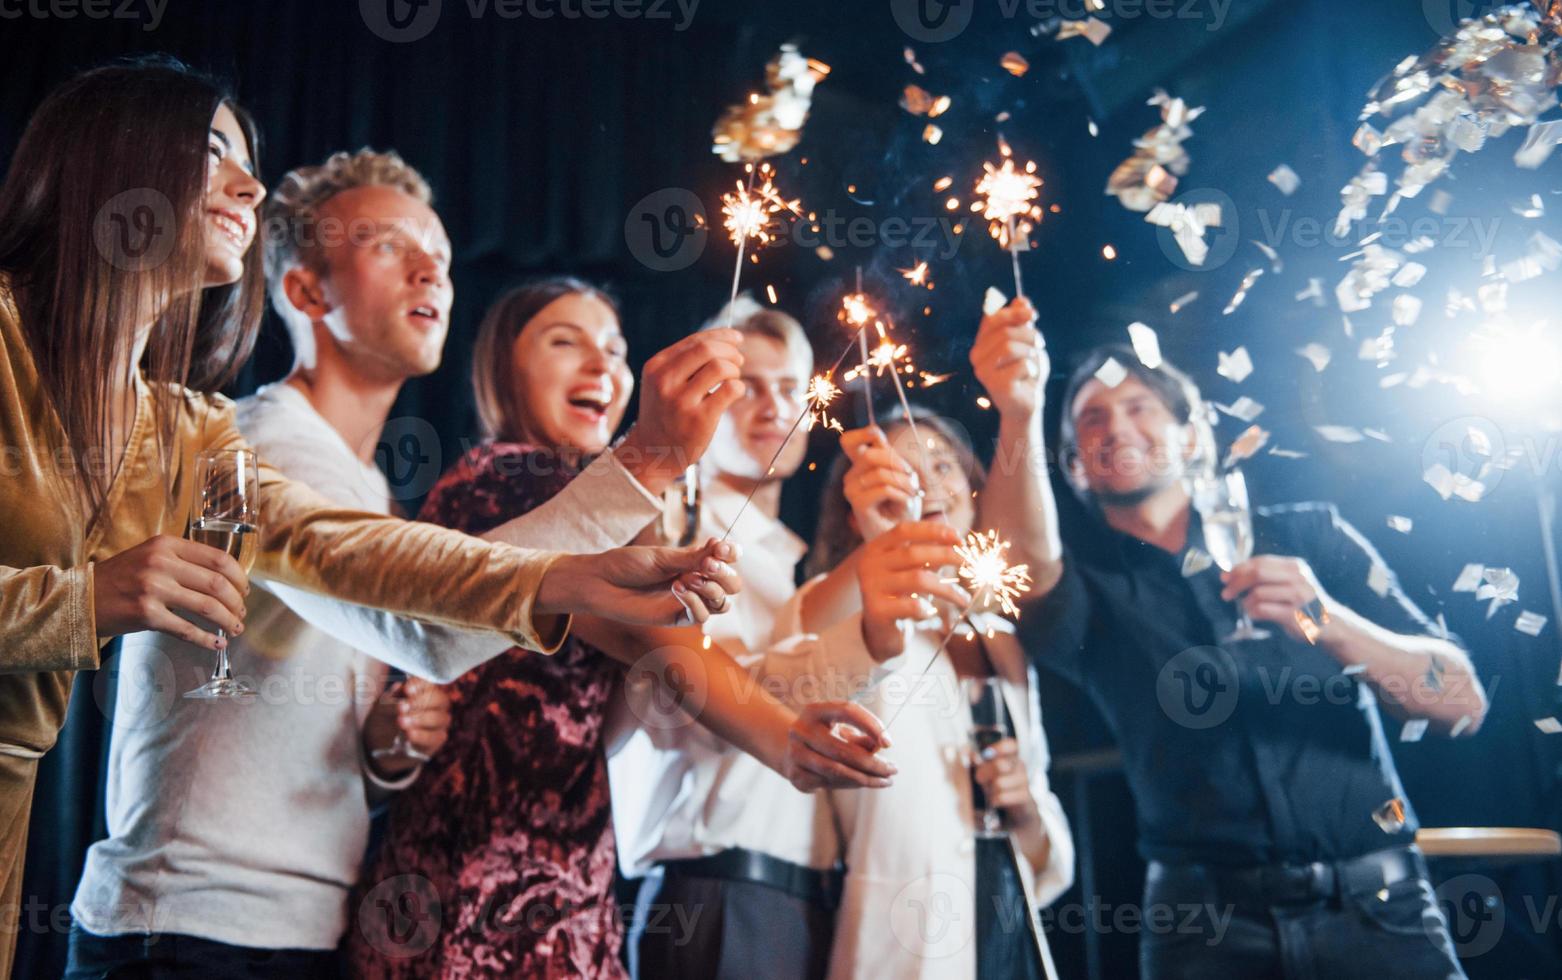 se divertindo com estrelinhas. confete está no ar. grupo de amigos alegres comemorando o ano novo dentro de casa com bebidas nas mãos foto